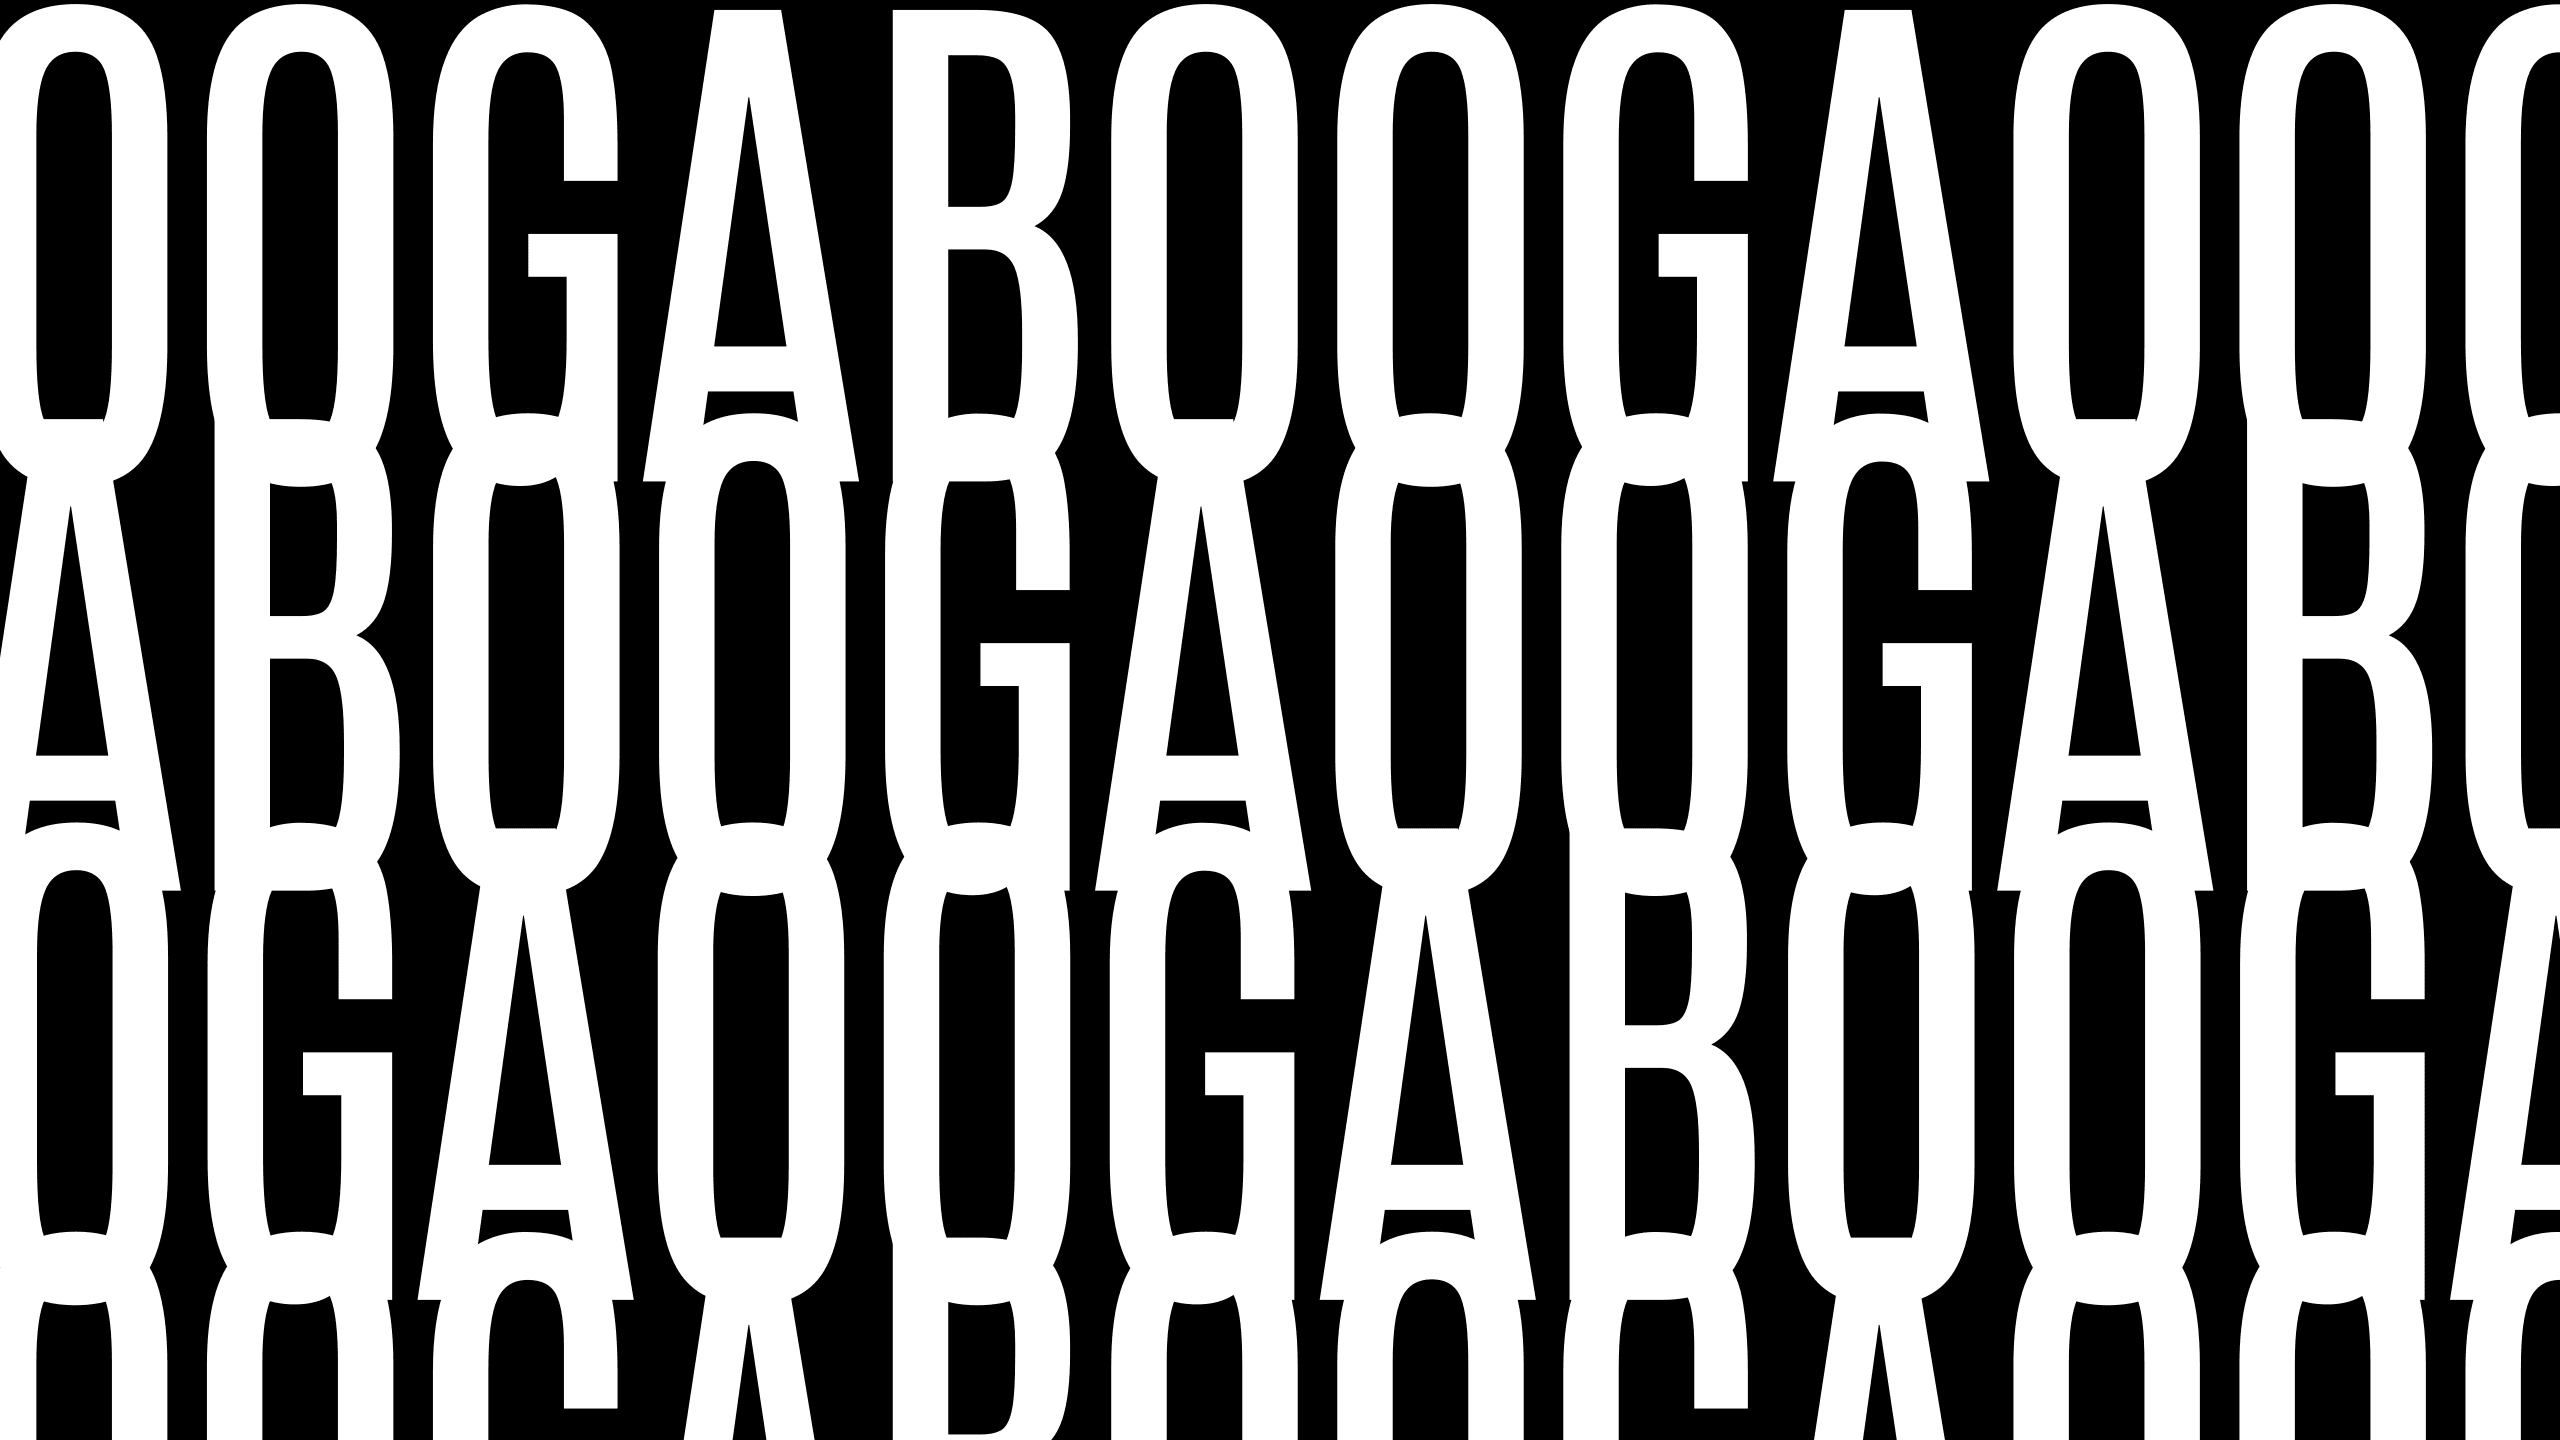 ooga_booga_ banner